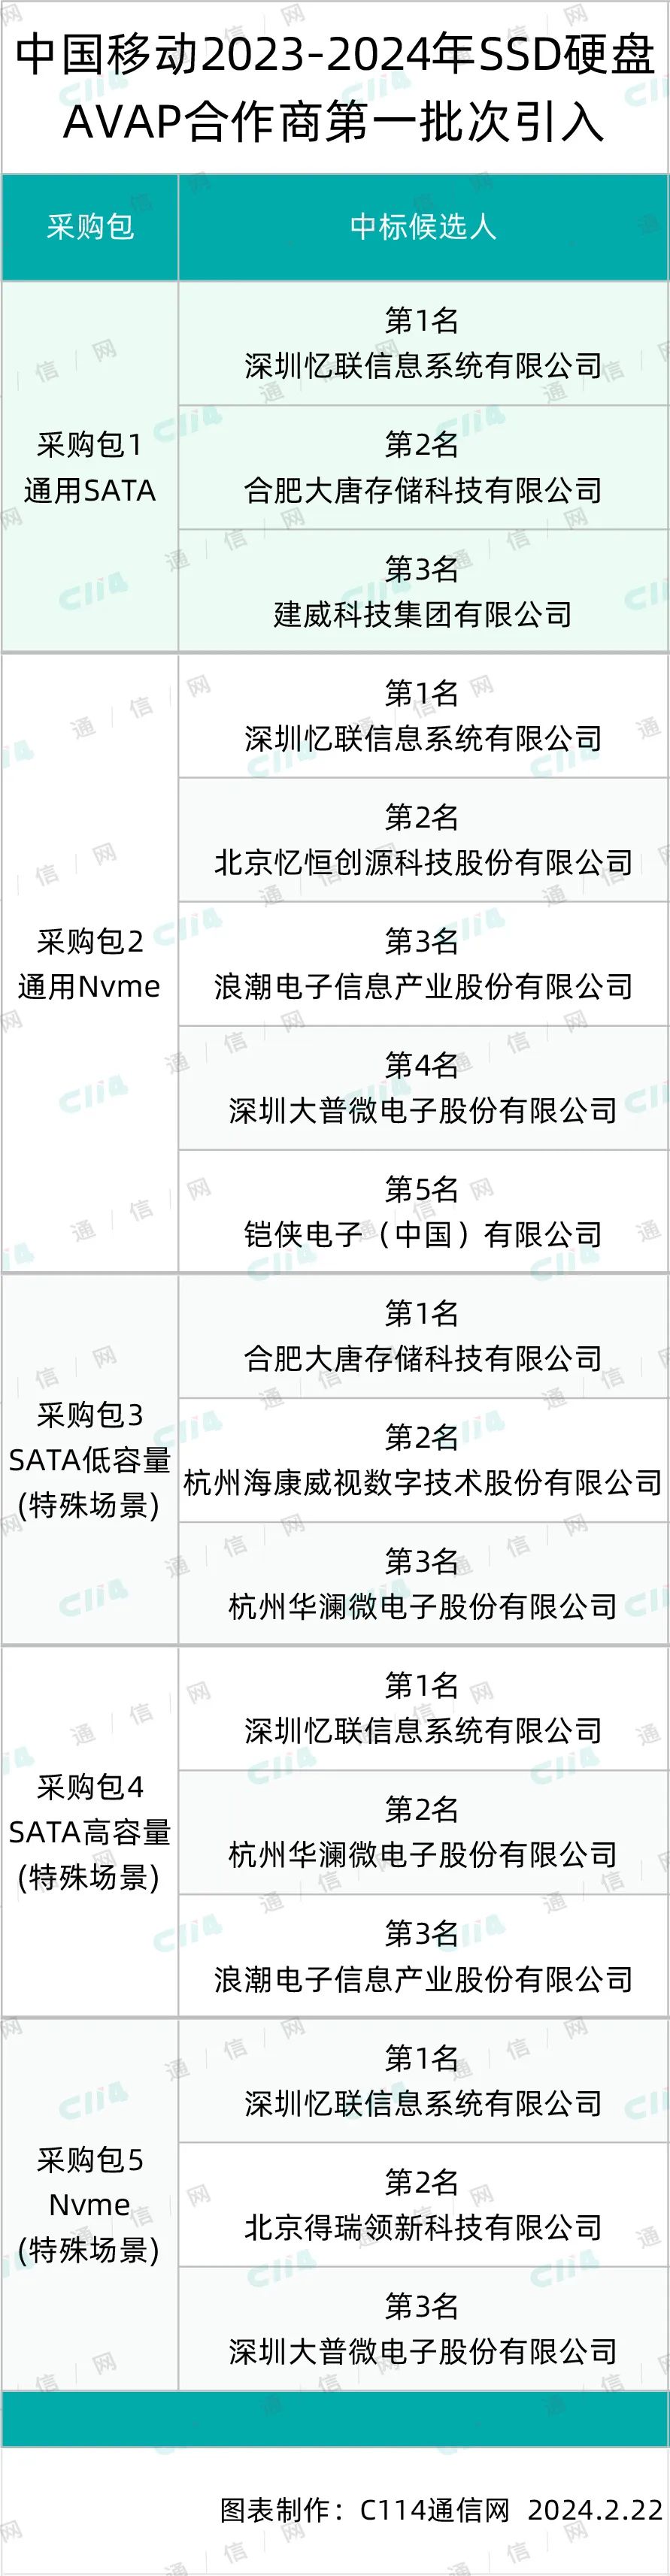 中国移动77.42万块SSD硬盘AVAP合作商第一批引入：忆联、大唐存储等10家中标